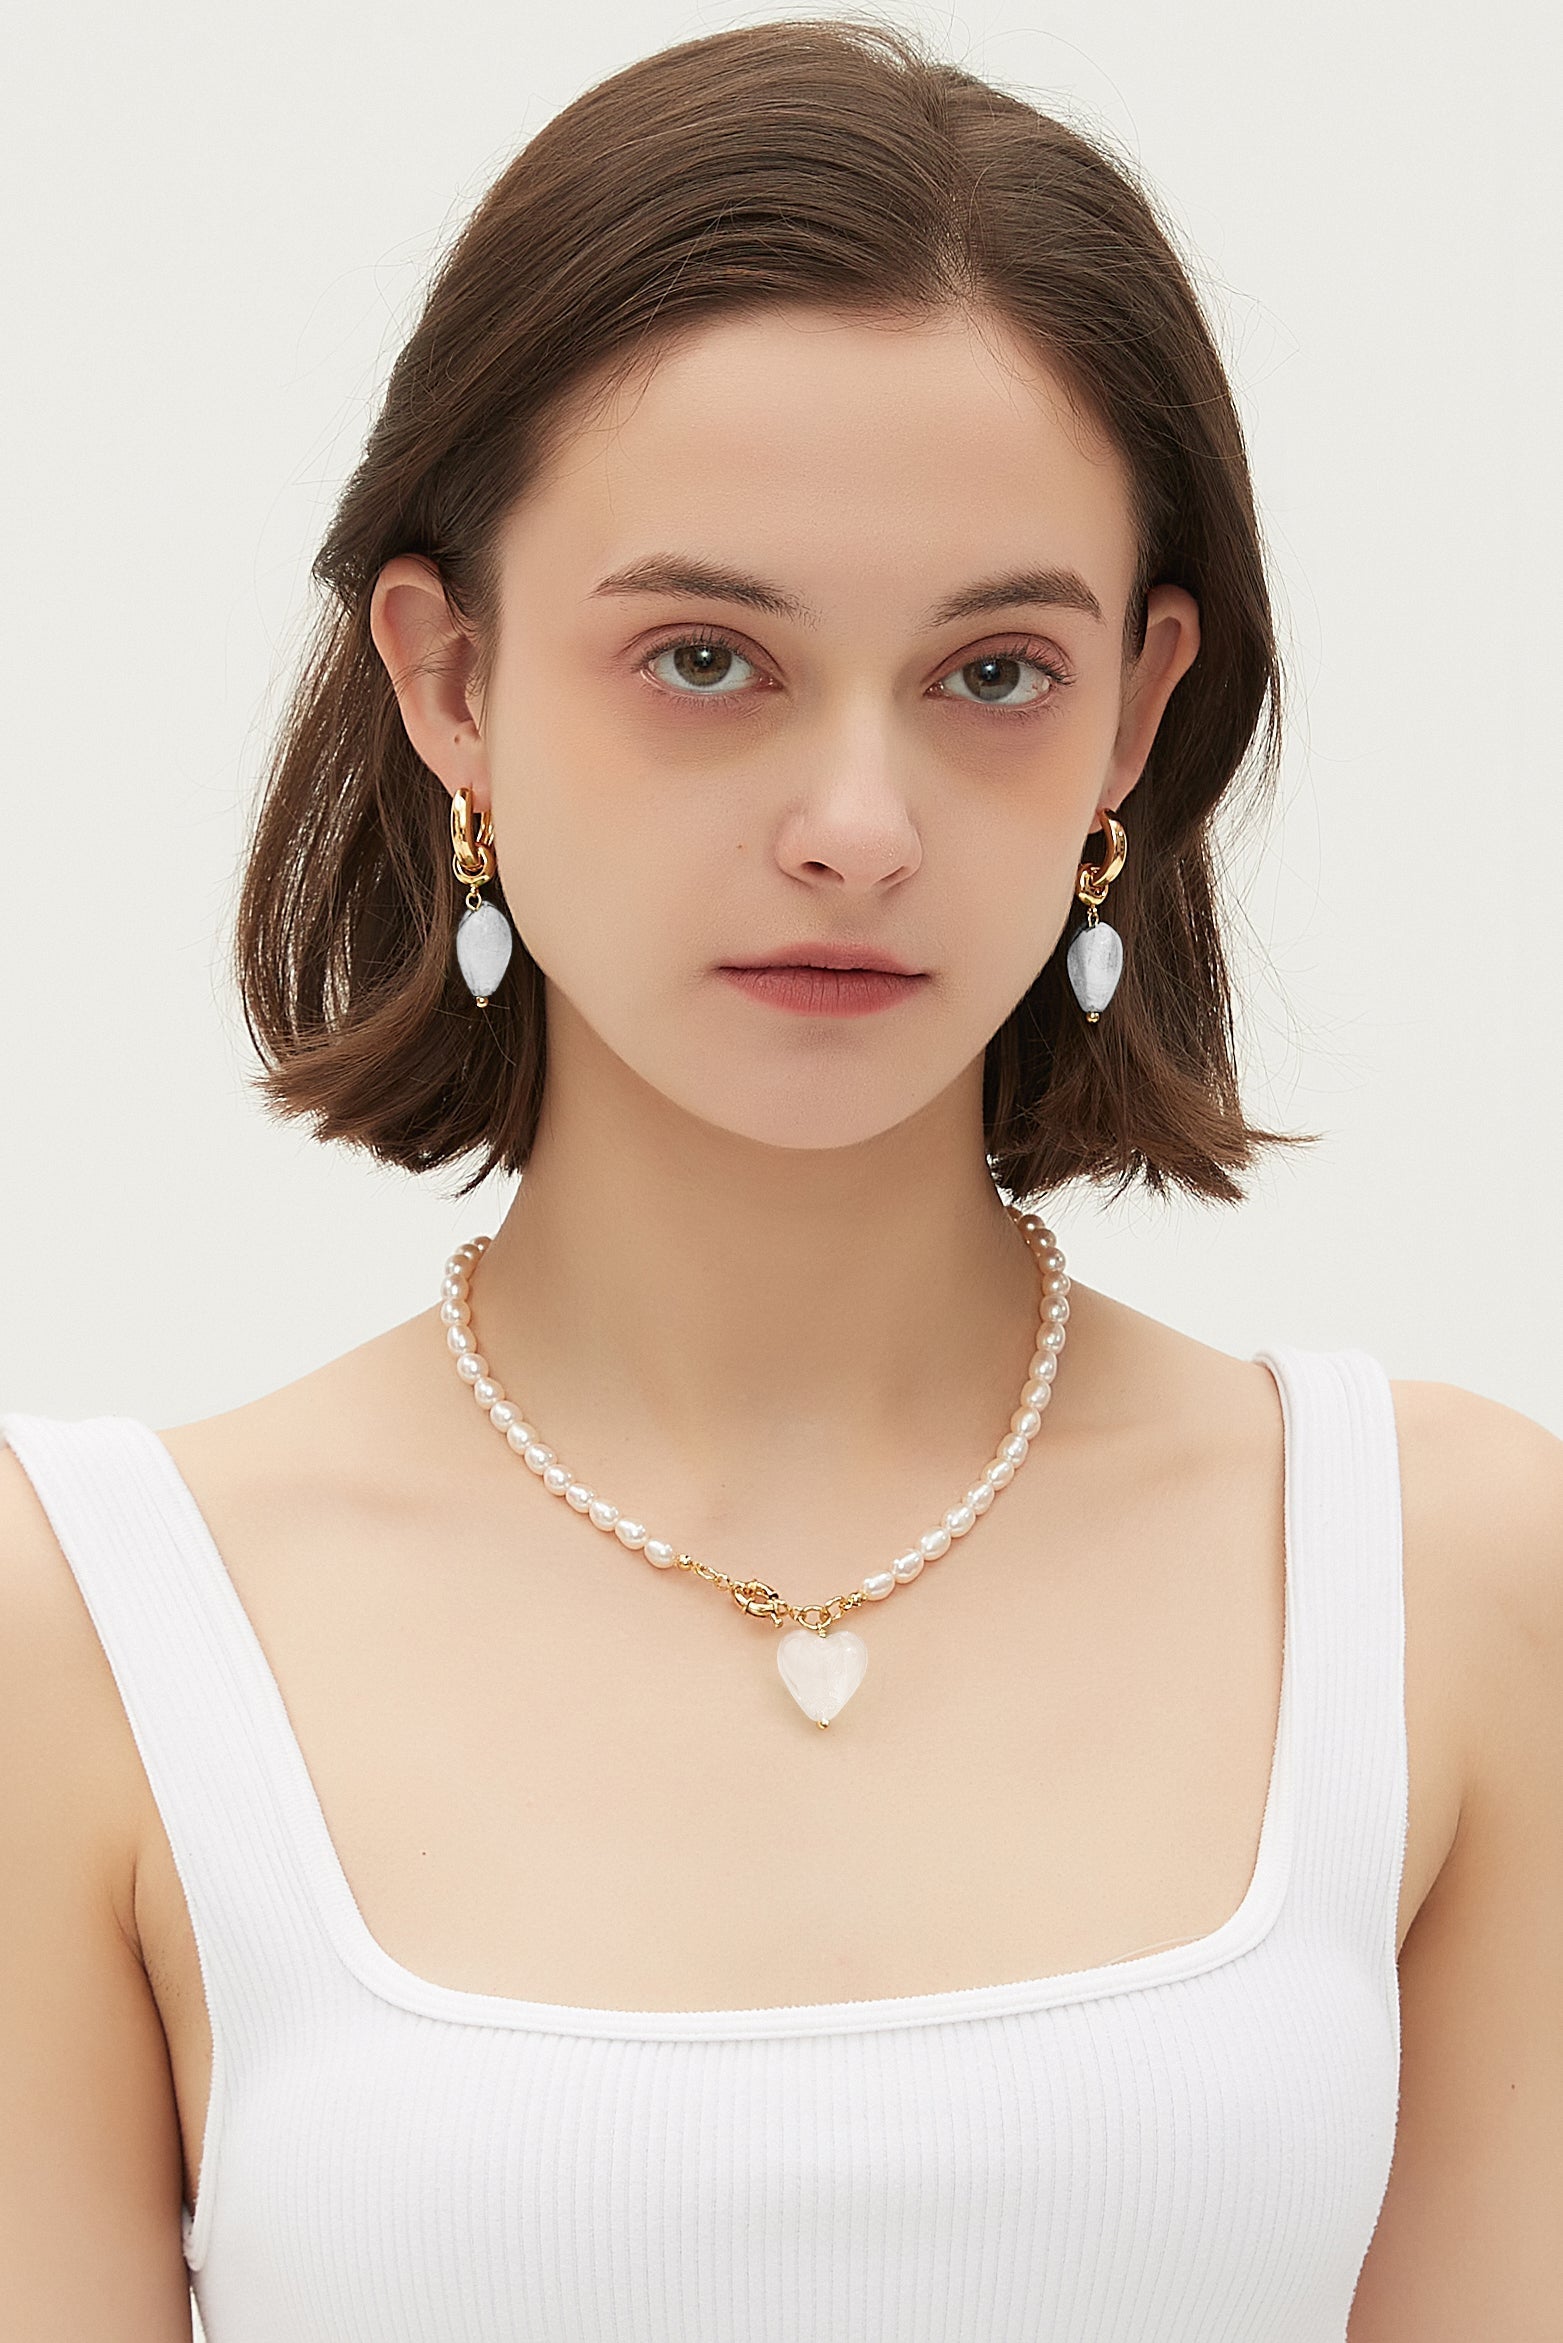 Esmée White Clear Glaze Heart Pendant Pearl Necklace